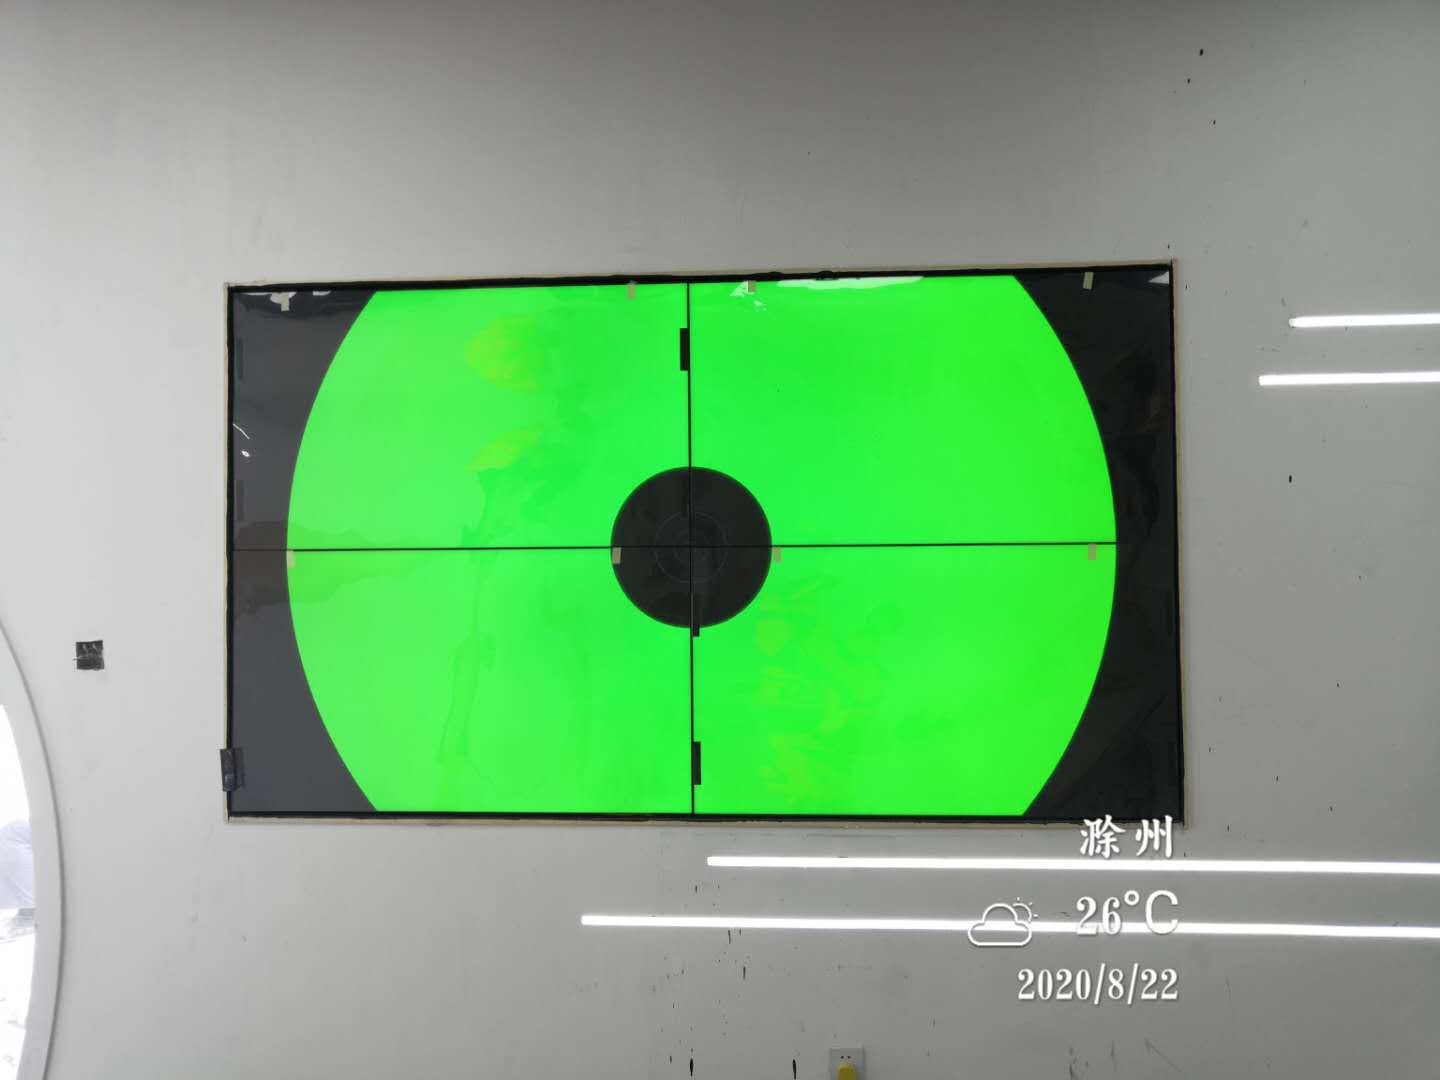  安徽滁州隆基乐叶光伏科技公司拼接屏项目 